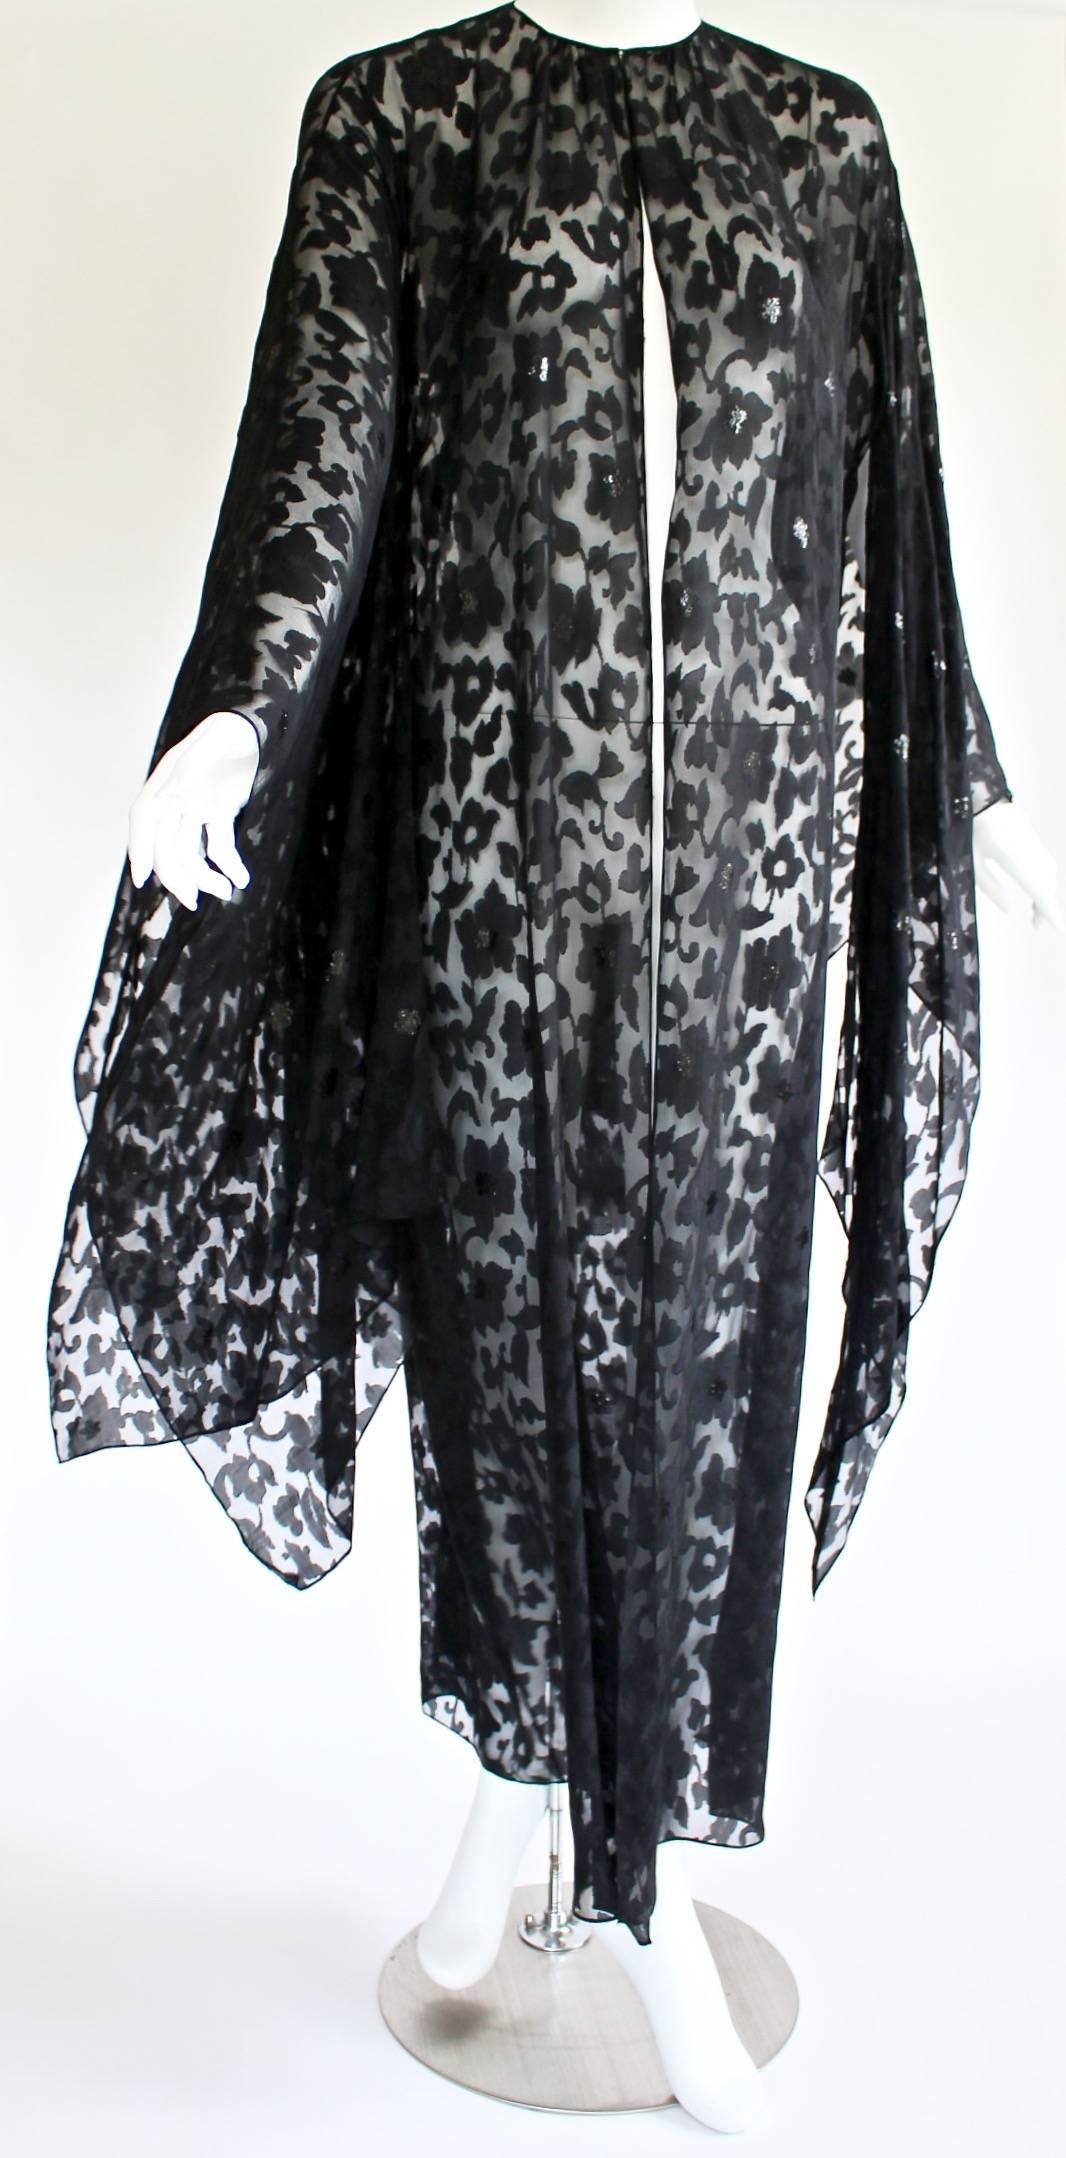 Dieser Kimono von Nina Ricci ist eine mühelose Art, Luxus in Schichten zu tragen. Die durchscheinende Schönheit ist aus luftig-leichter schwarzer Seide mit einem Devoré-Print aus herrlich wirbelnden Blumen, Ranken und Blättern. Viele der Blumen sind